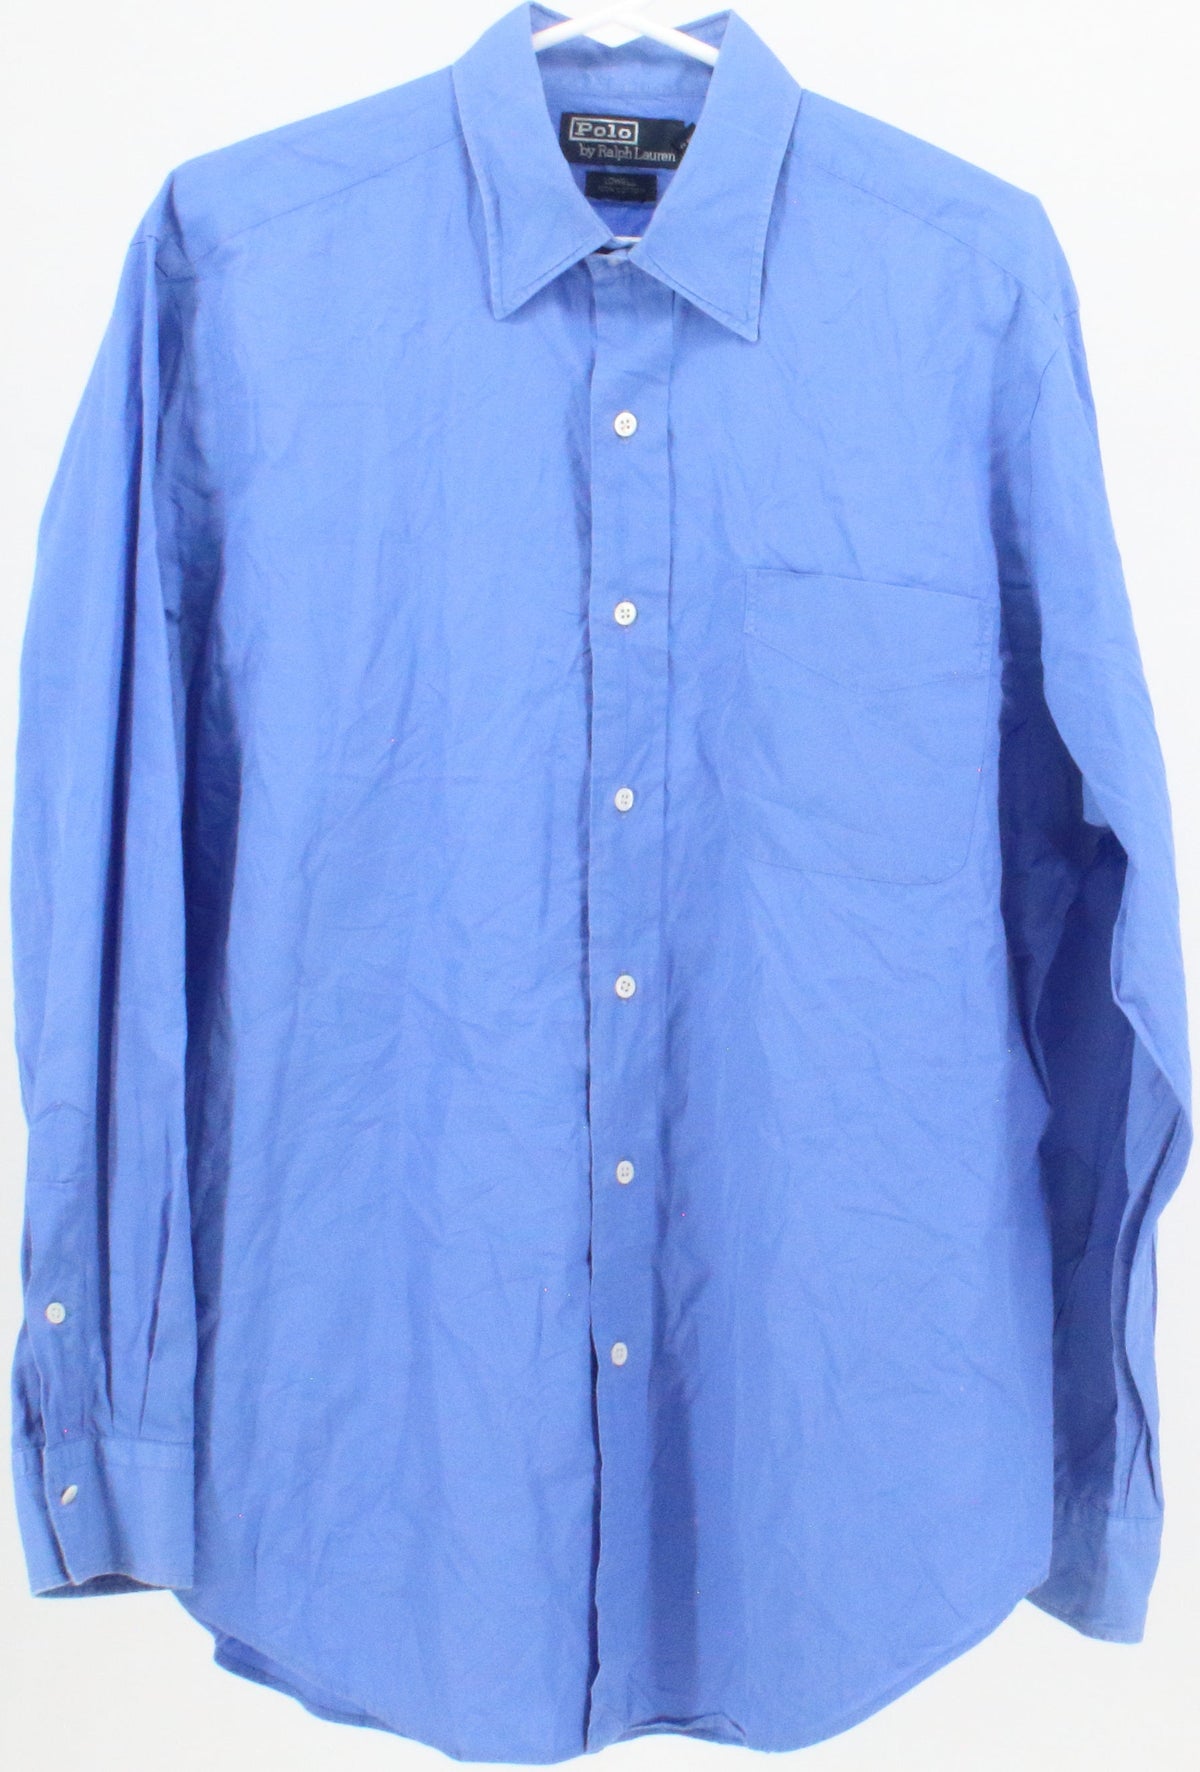 Polo by Ralph Lauren Blue Shirt